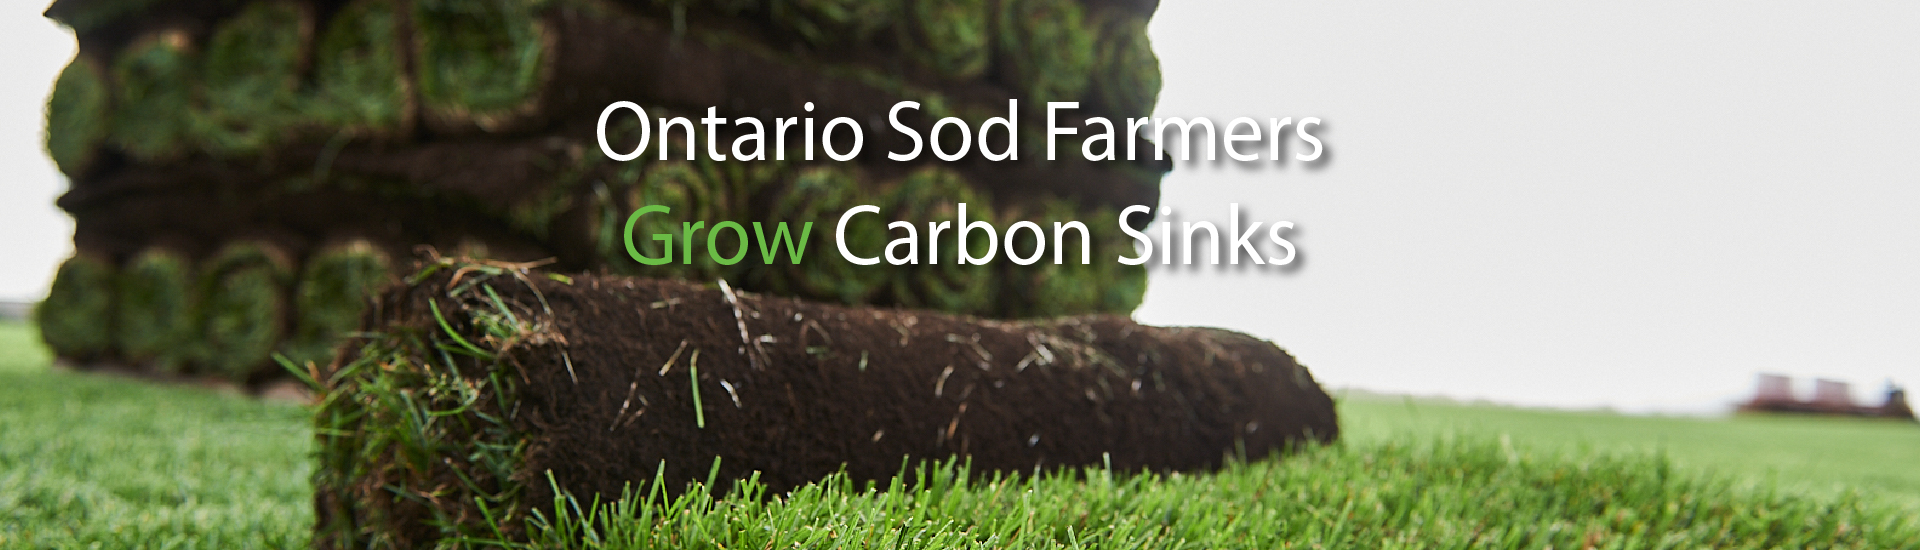 Ontario Sod Farmers Grow Carbon Sinks